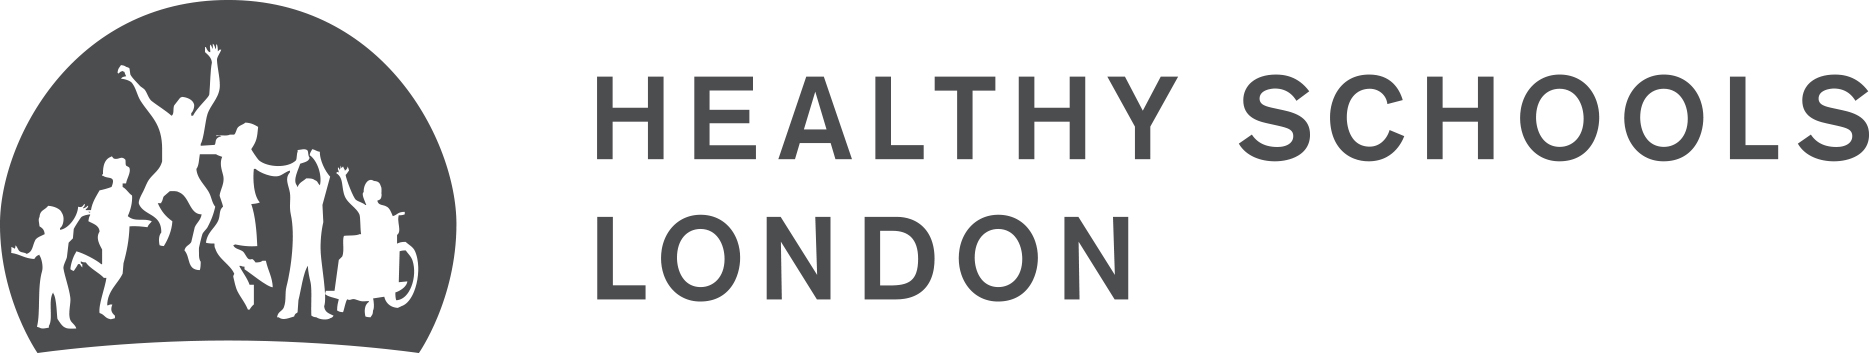 Healthy Schools London